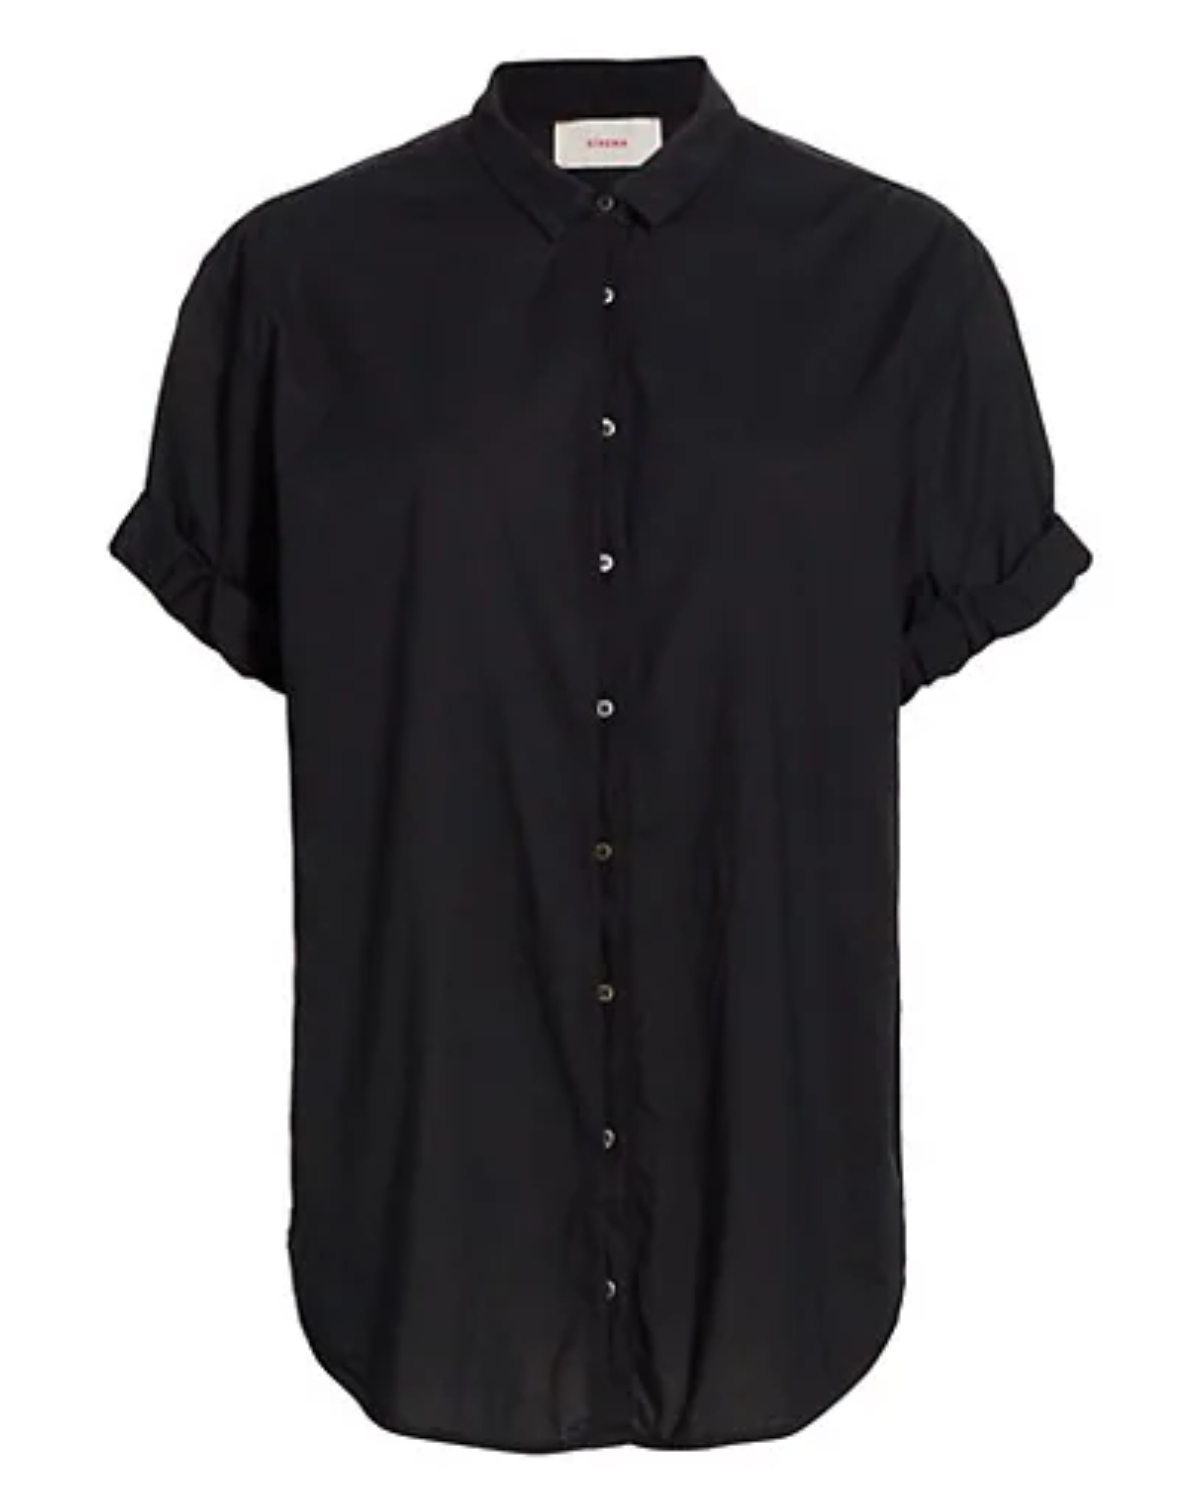 Channing Shirt (Black)